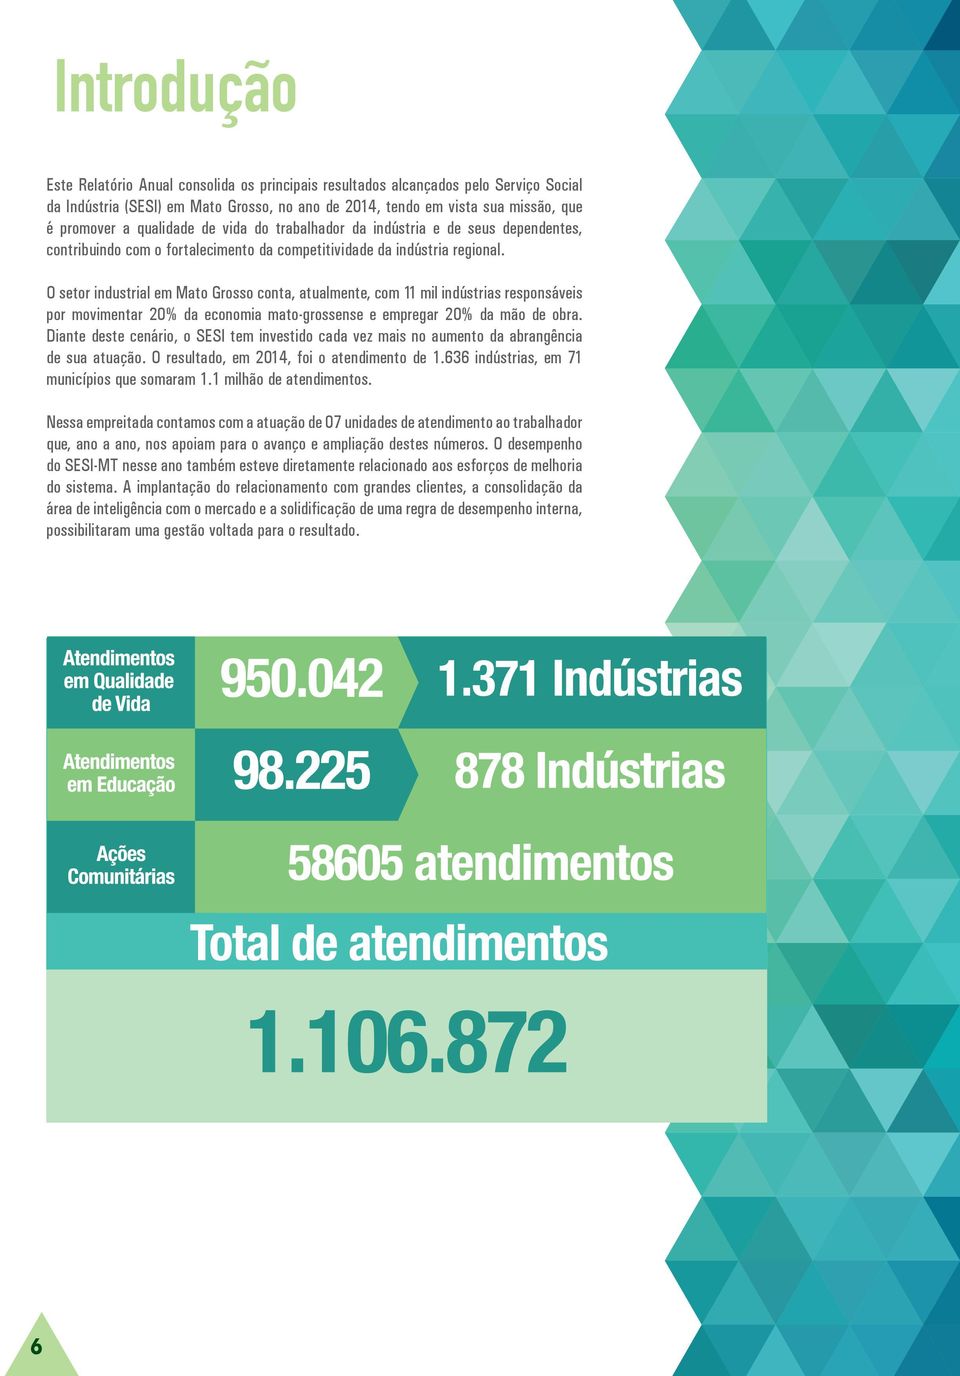 O setor industrial em Mato Grosso conta, atualmente, com 11 mil indústrias responsáveis por movimentar 20% da economia mato-grossense e empregar 20% da mão de obra.